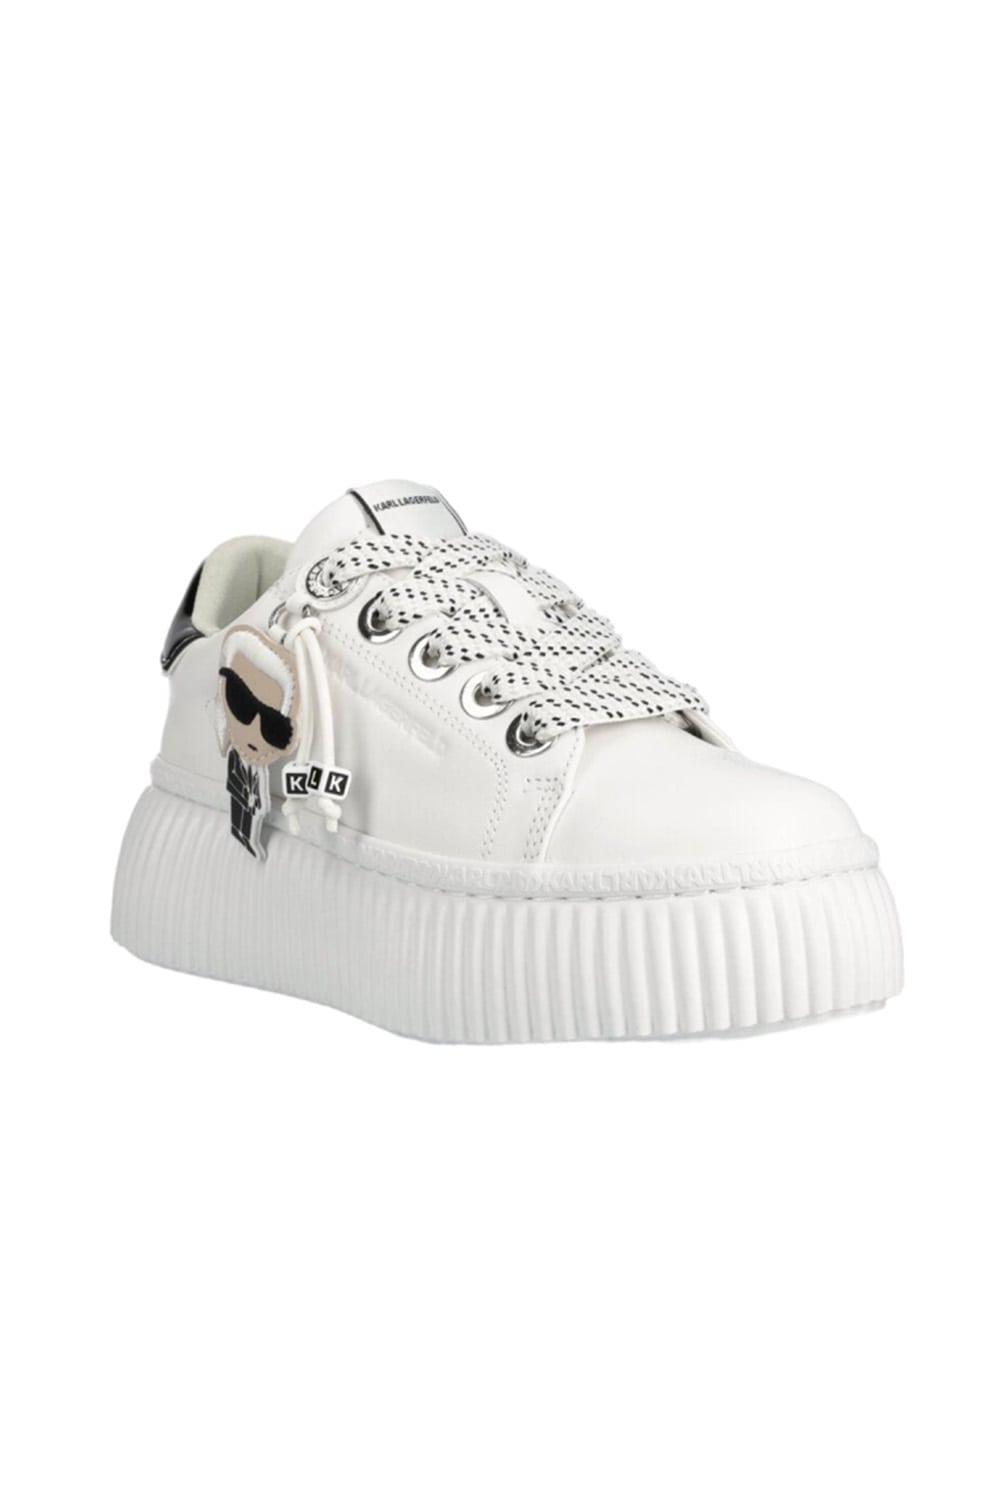 Karl Lagerfeld Δερμάτινα Sneakers KL42376N